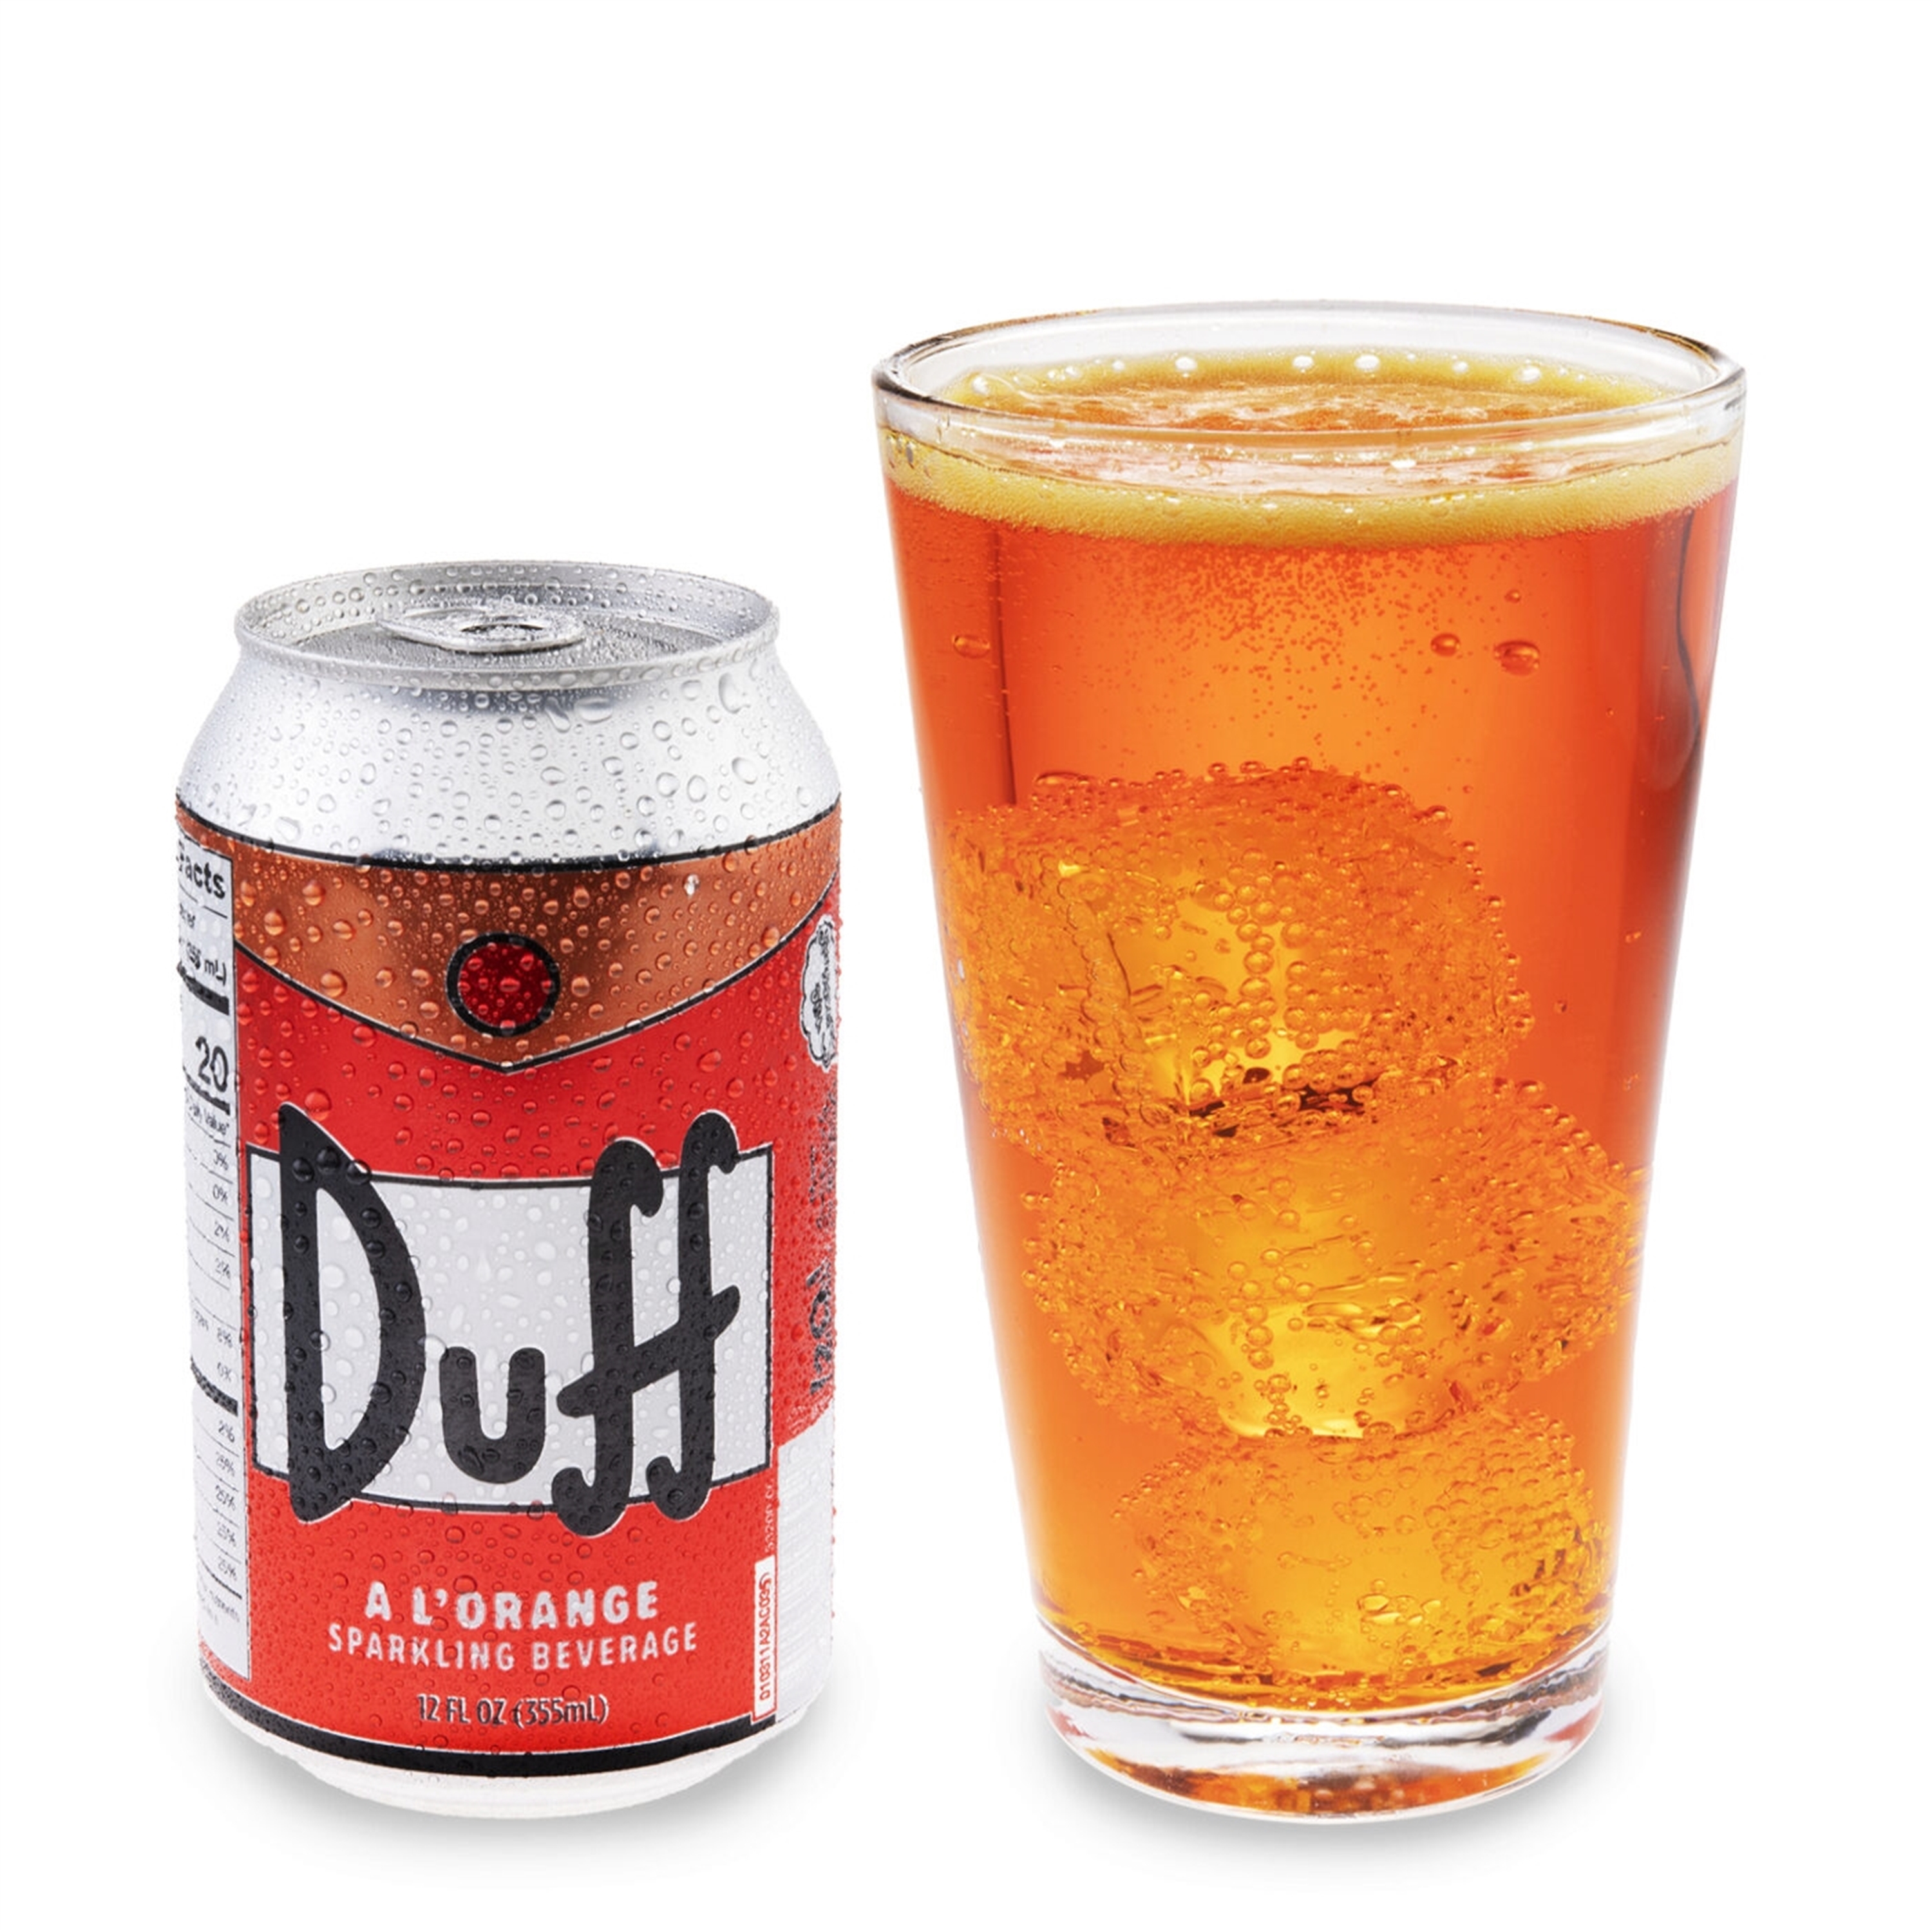 Duff Sparkling Beverage - image 1 of 1